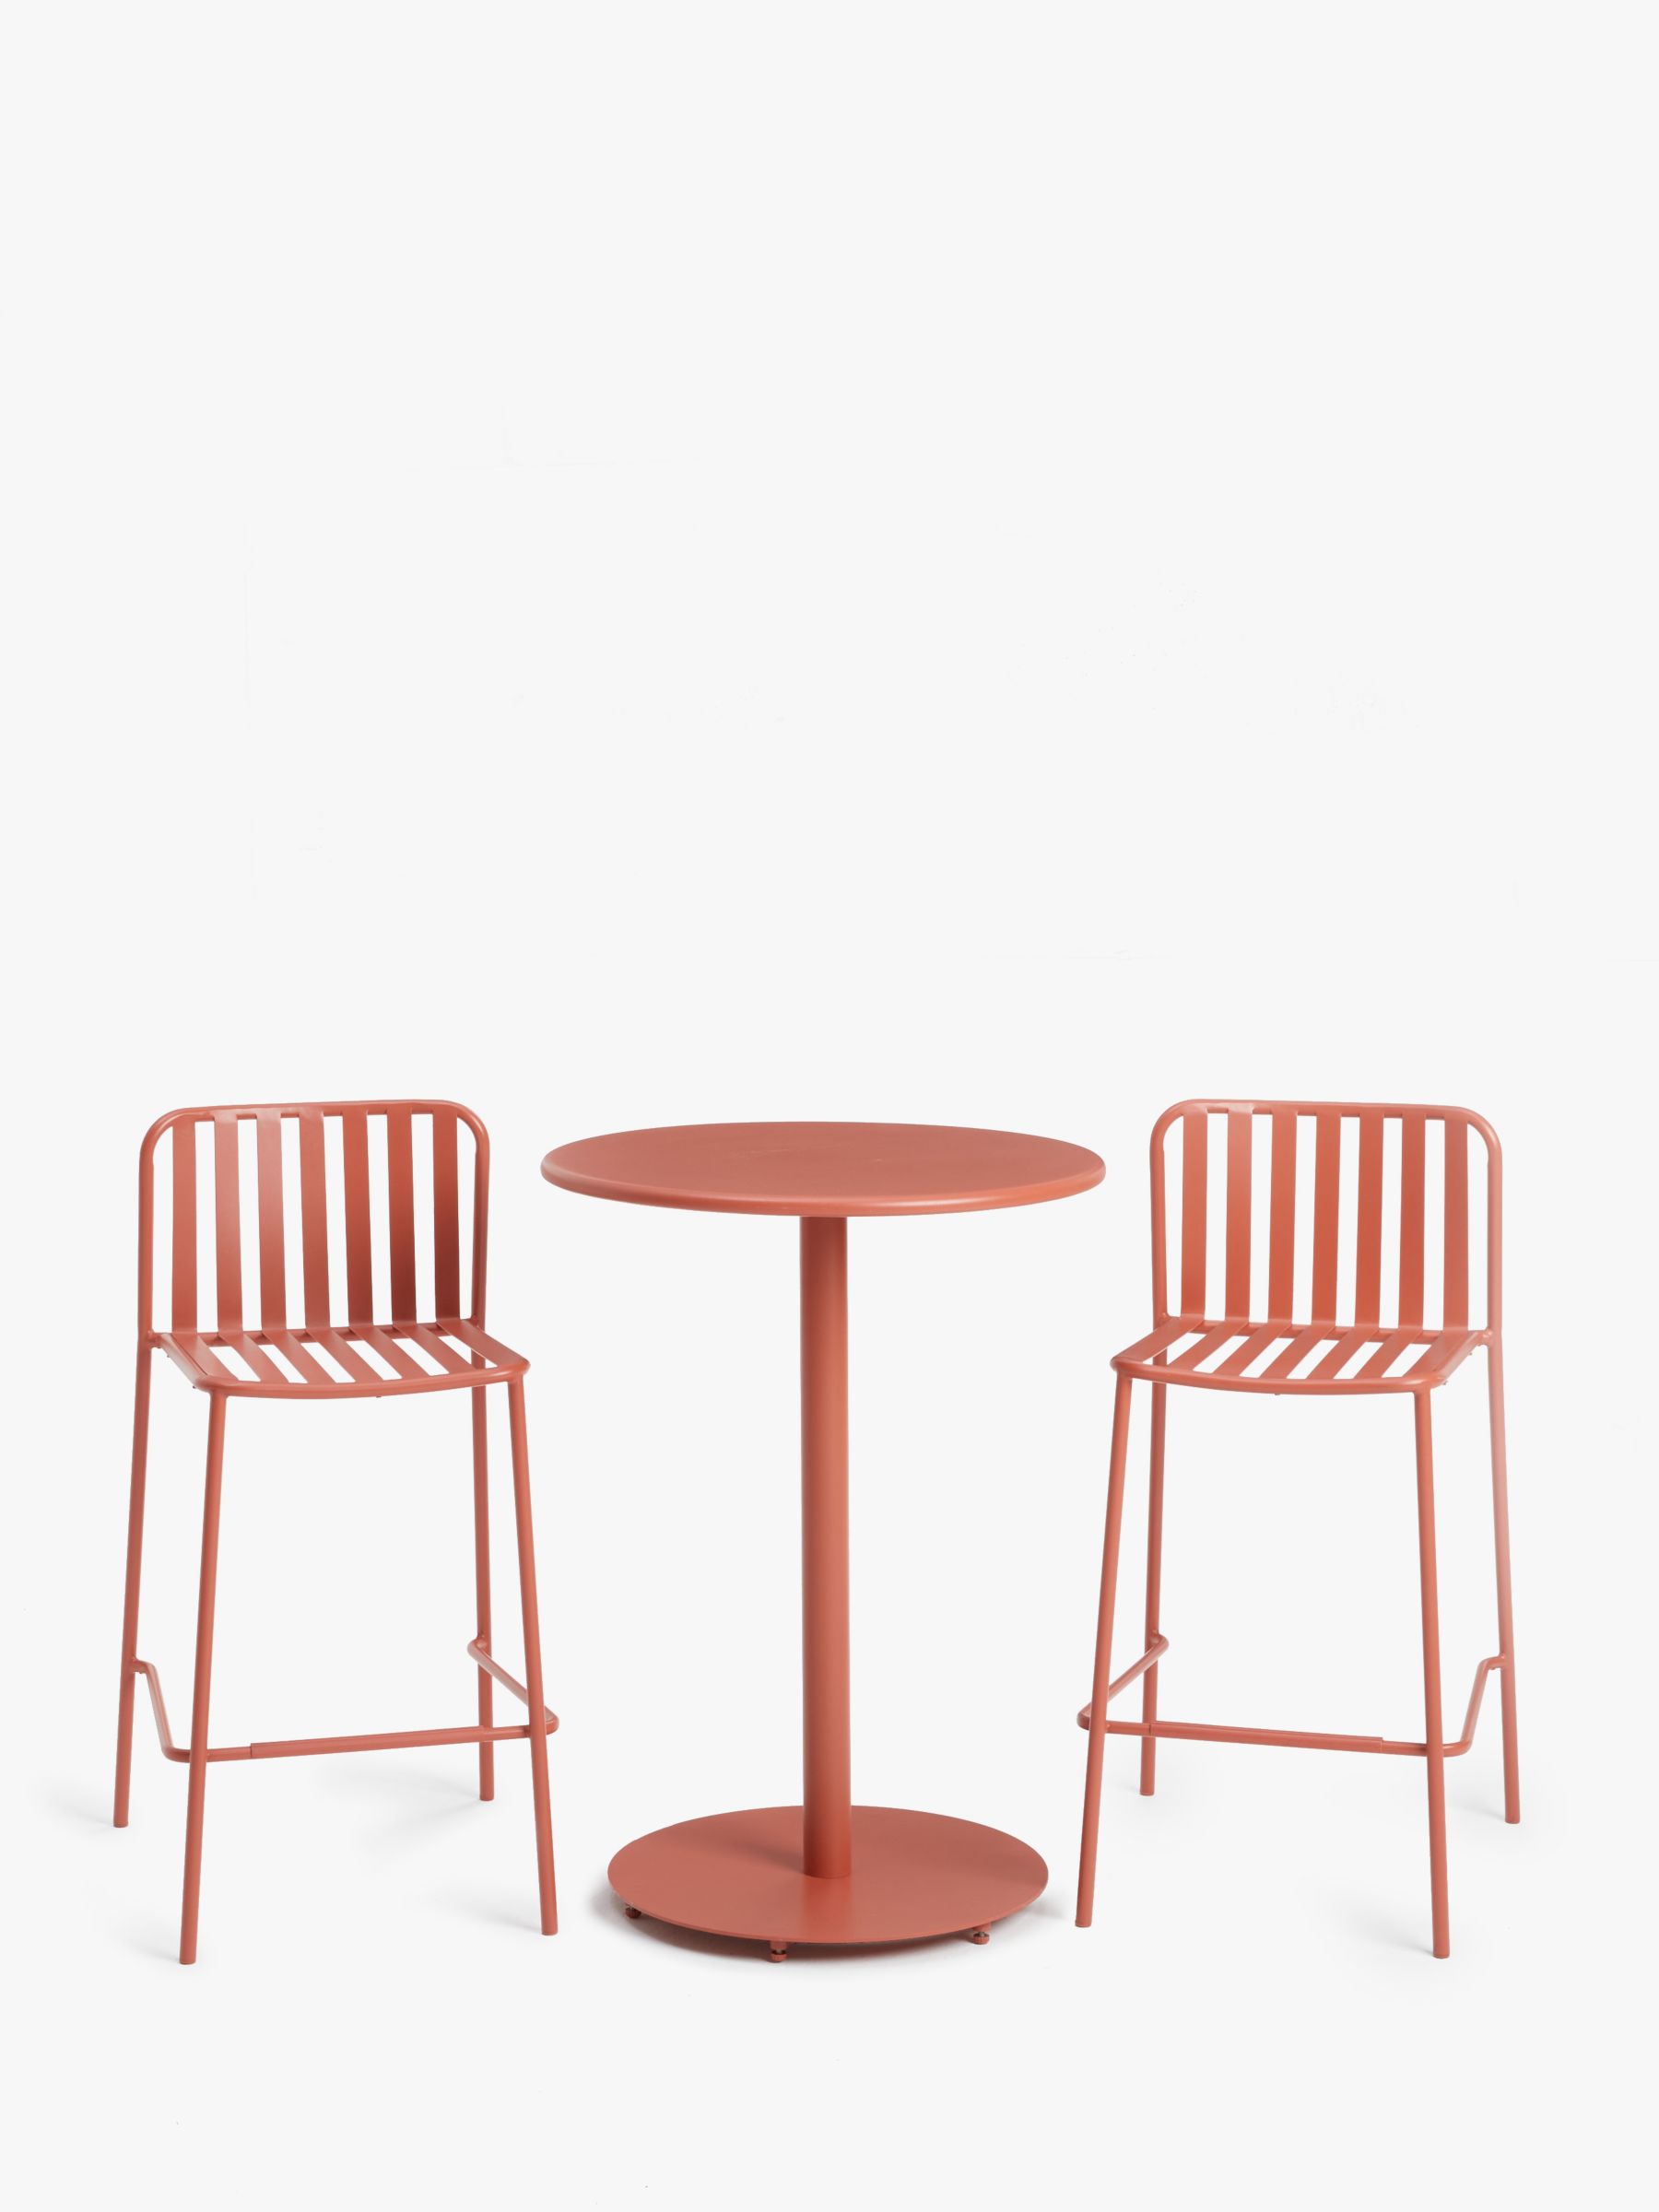 Photo of John lewis metal garden bar table & chairs set